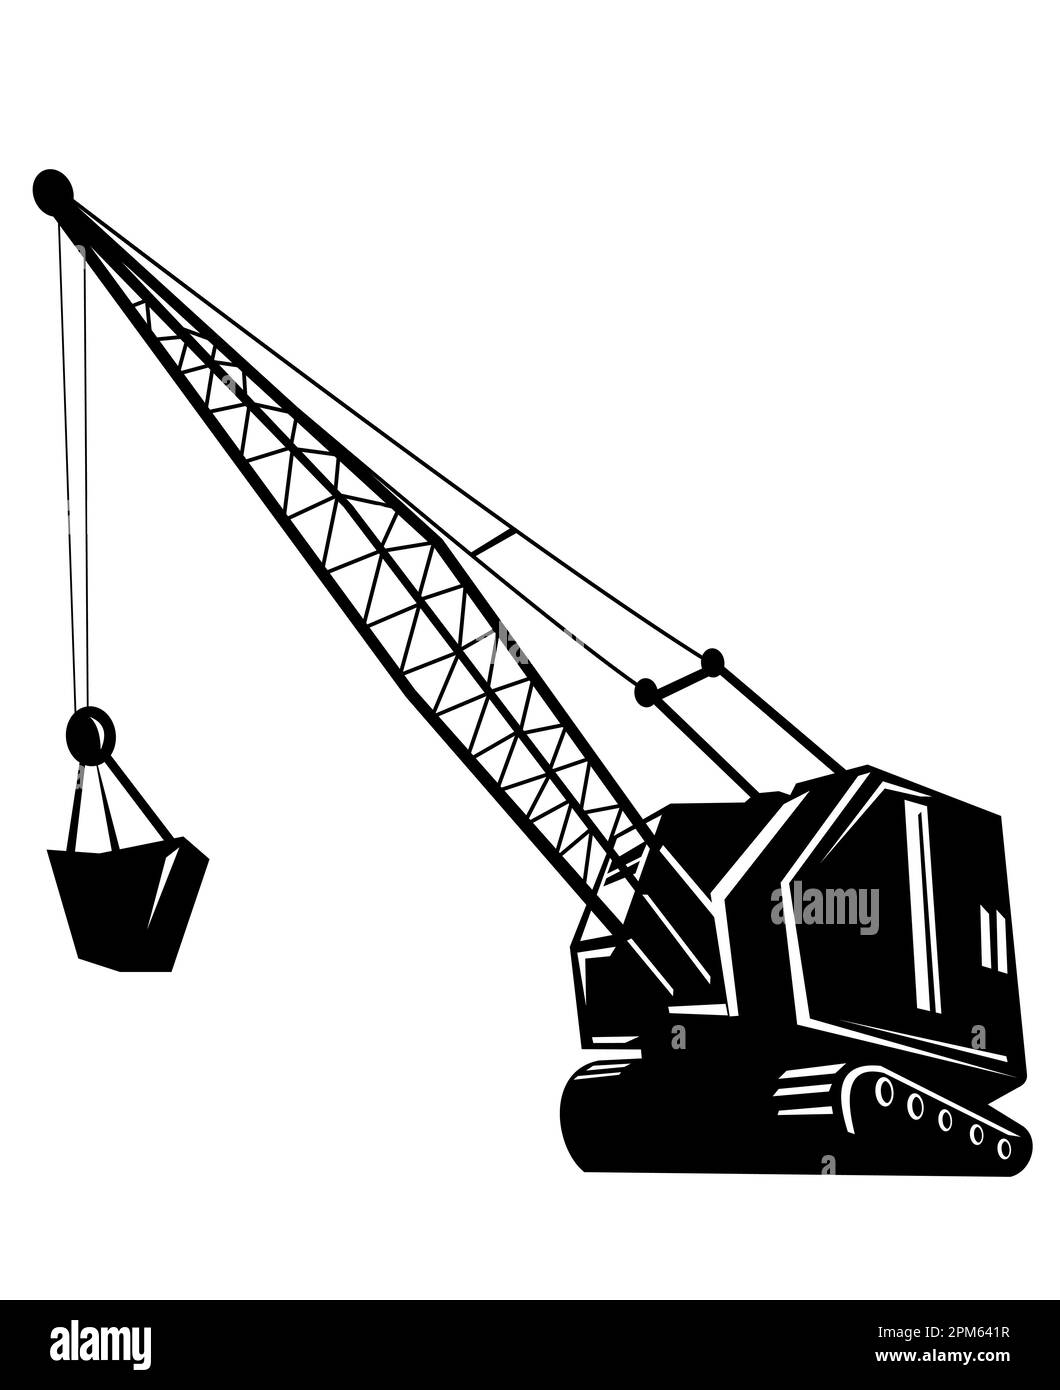 Illustrazione di una gru o di un paranco da miniera con braccio visto dal lato ad angolo basso su sfondo isolato realizzato in legno retrò bianco e nero Foto Stock